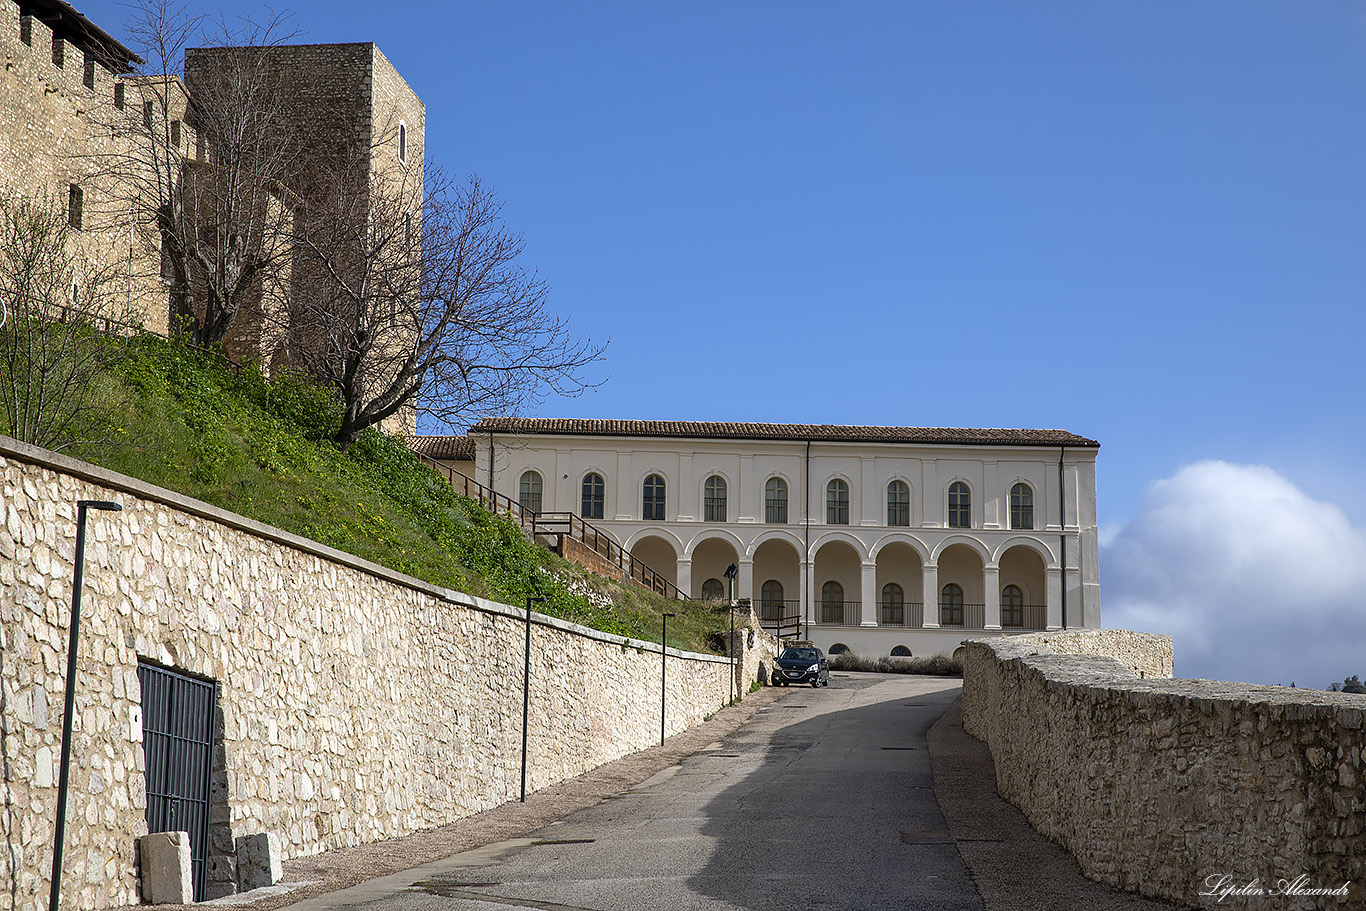 Замок Альборноциана (Rocca Albornoziana)